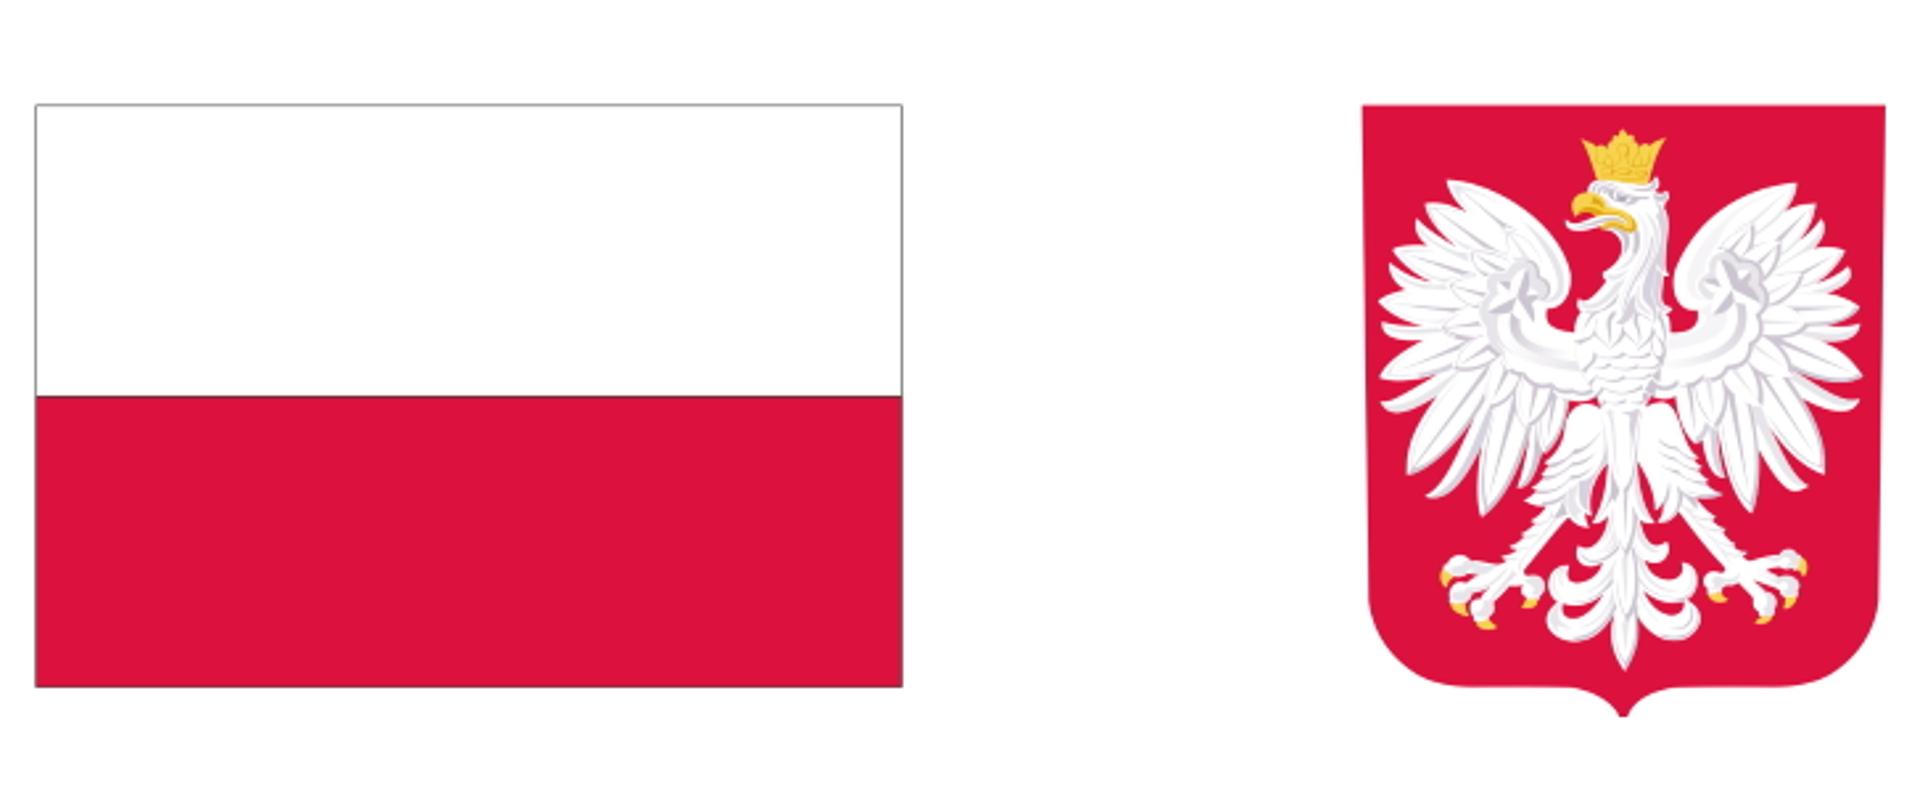 Biało czerwona flaga polski a obok godło: orzeł w koronie na czerwonym tle